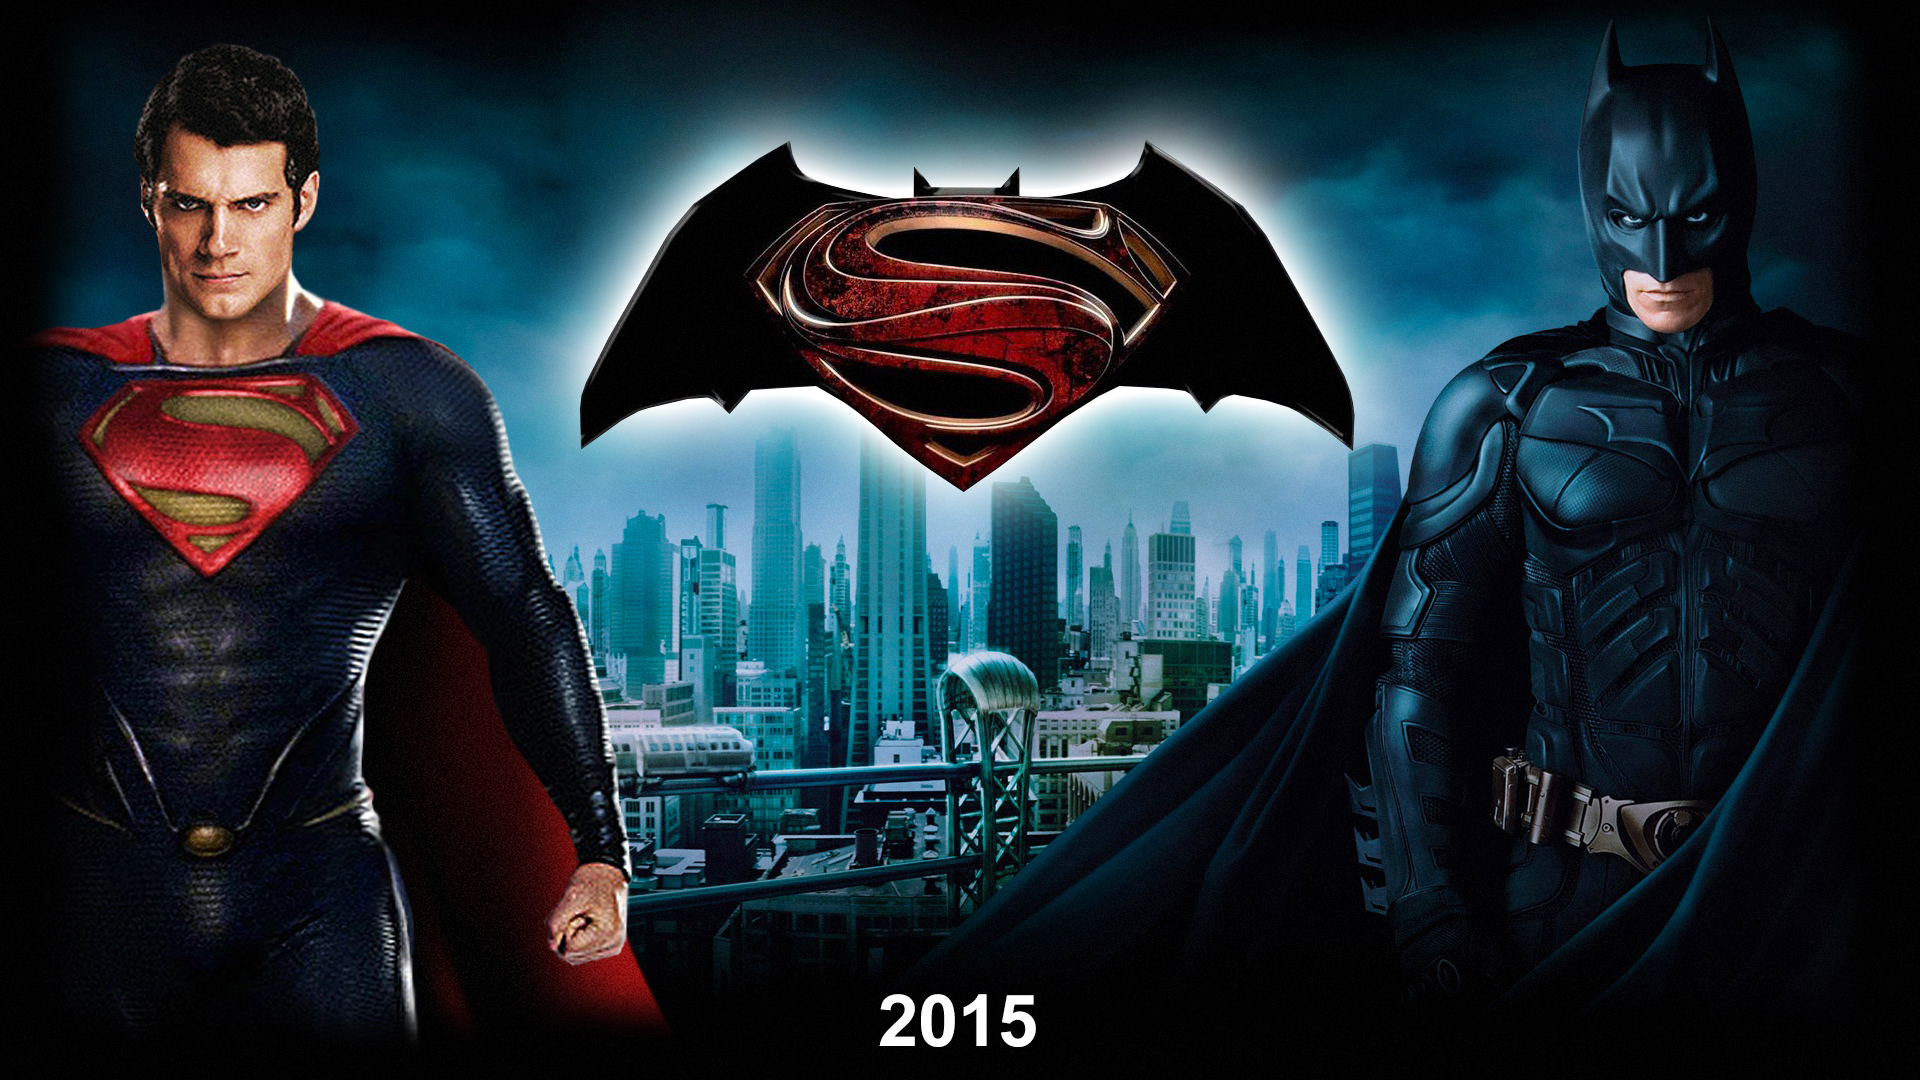 Batman v Superman 2015 Comic Heroes Wallpaper